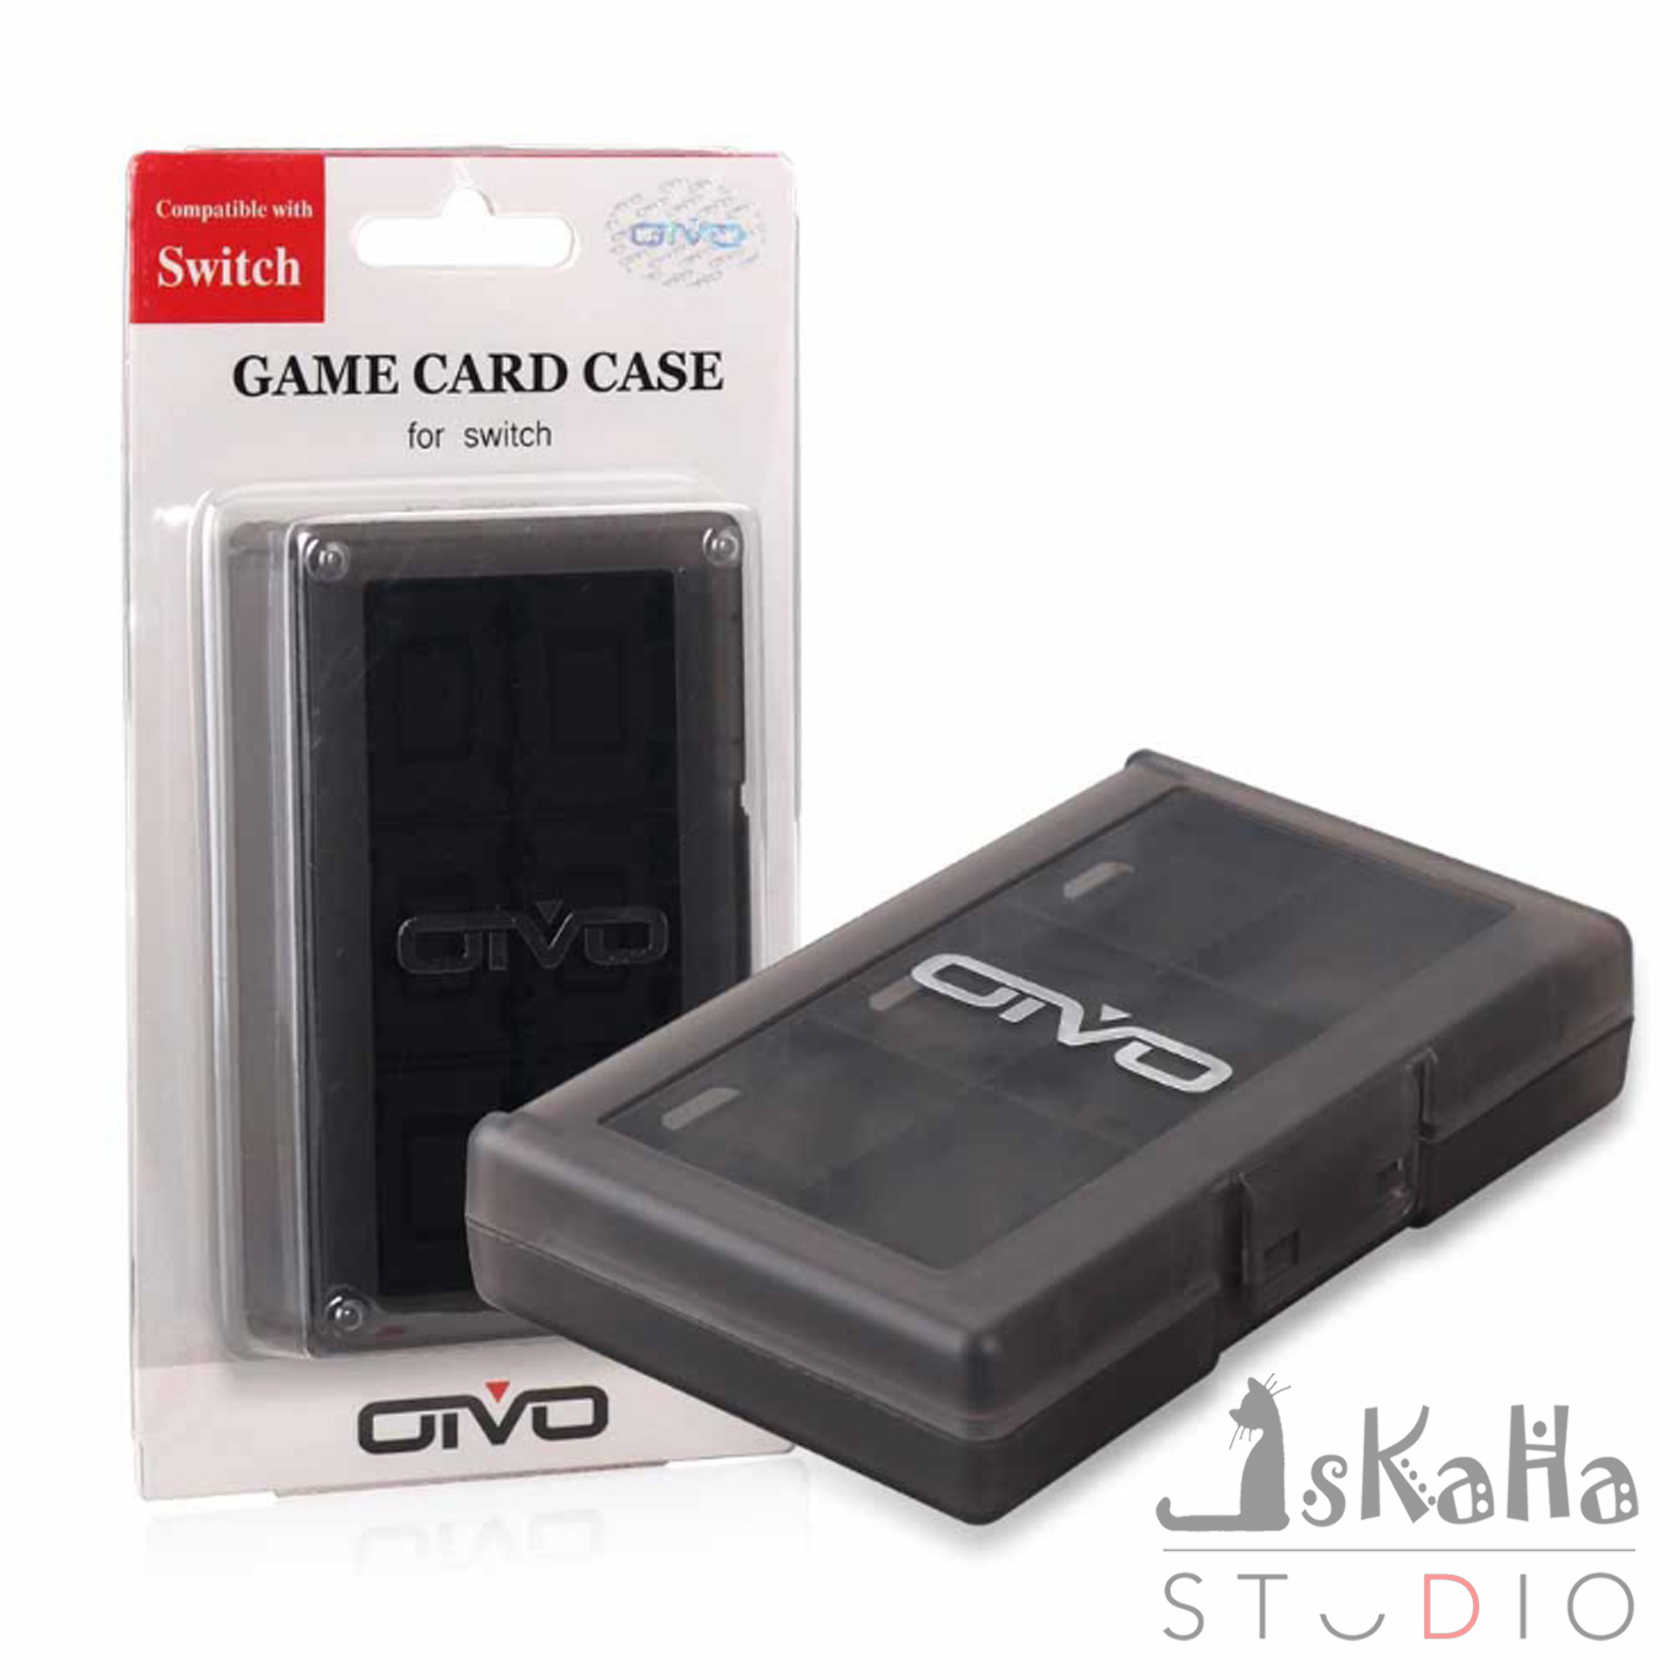 現貨 NS 遊戲卡盒 24片裝 OIVO 高CP值 卡帶盒 遊戲片收納 遊戲卡盒 透黑色 白色 藍色 Switch